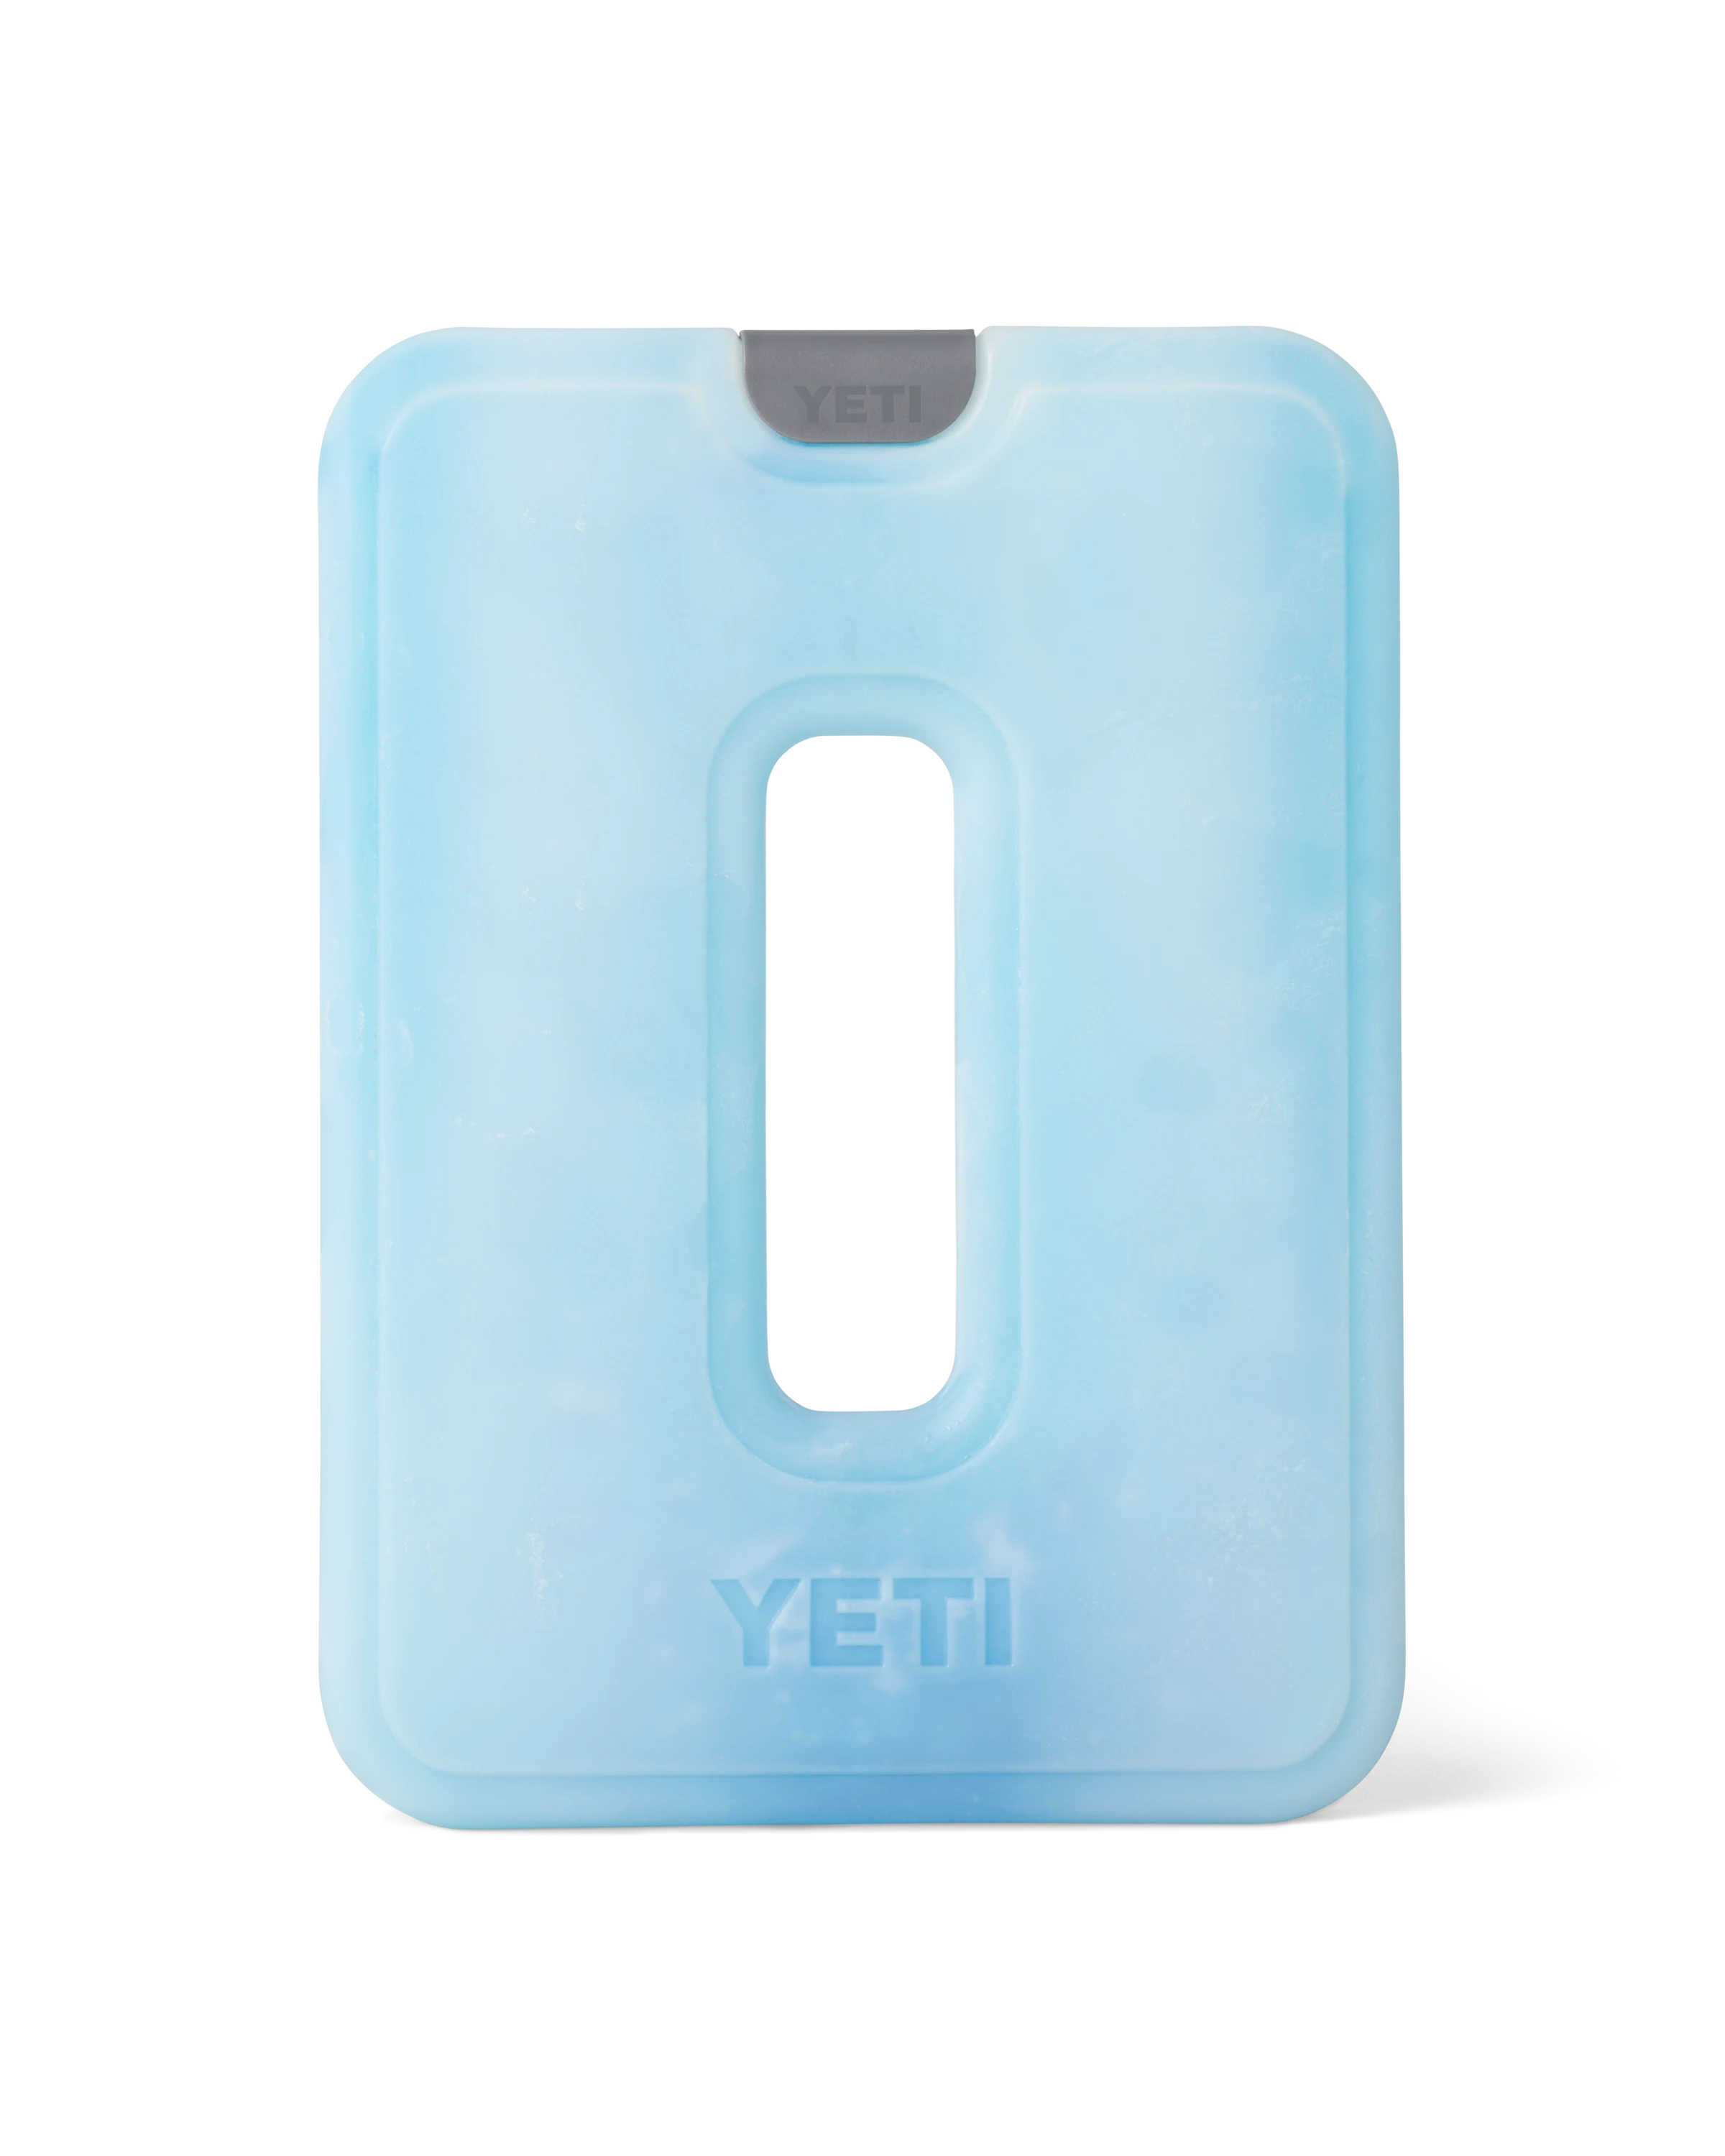 YETI- Thin Ice Large